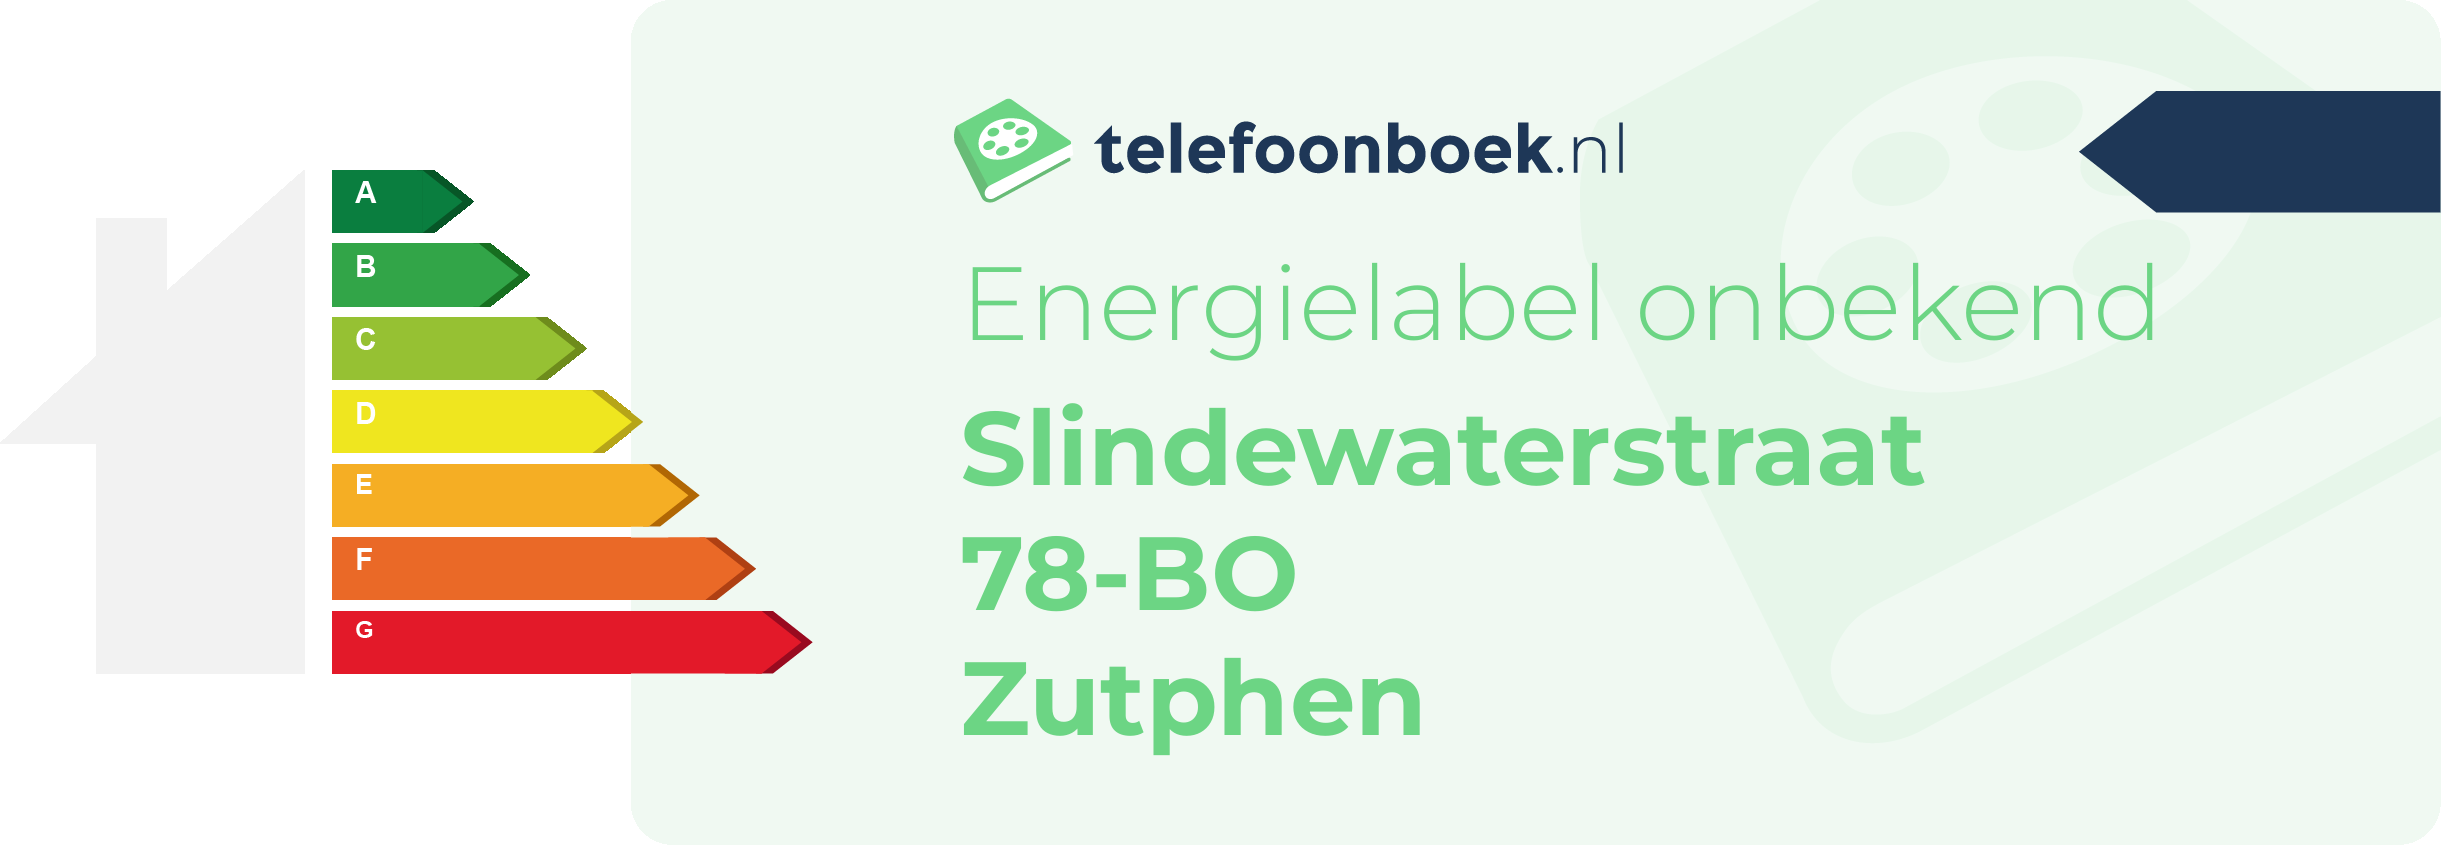 Energielabel Slindewaterstraat 78-BO Zutphen